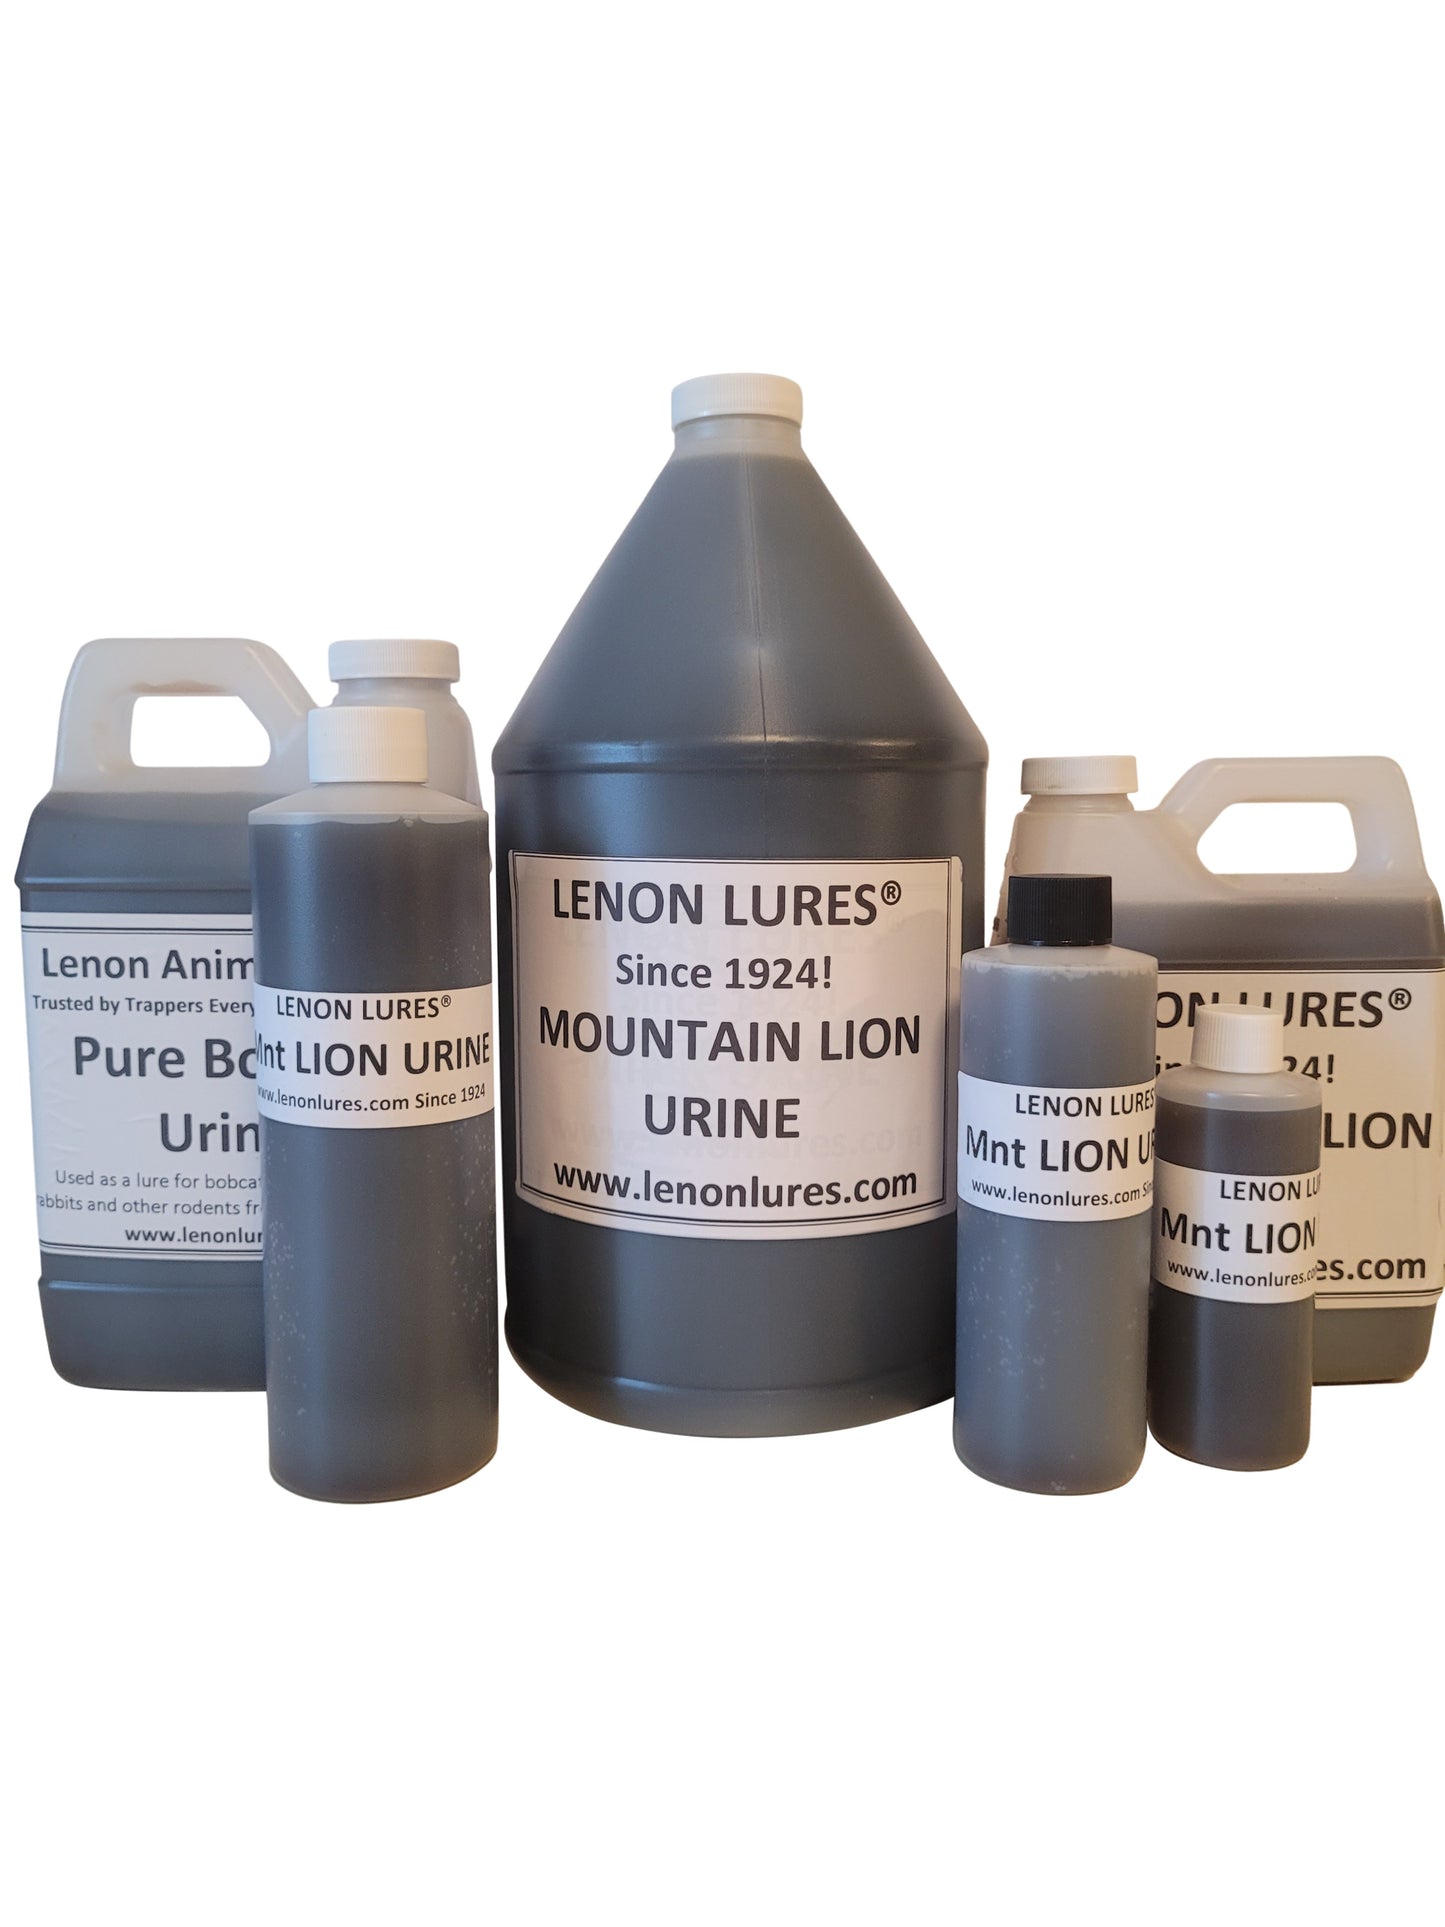 Lenon's Mountain Lion Urine